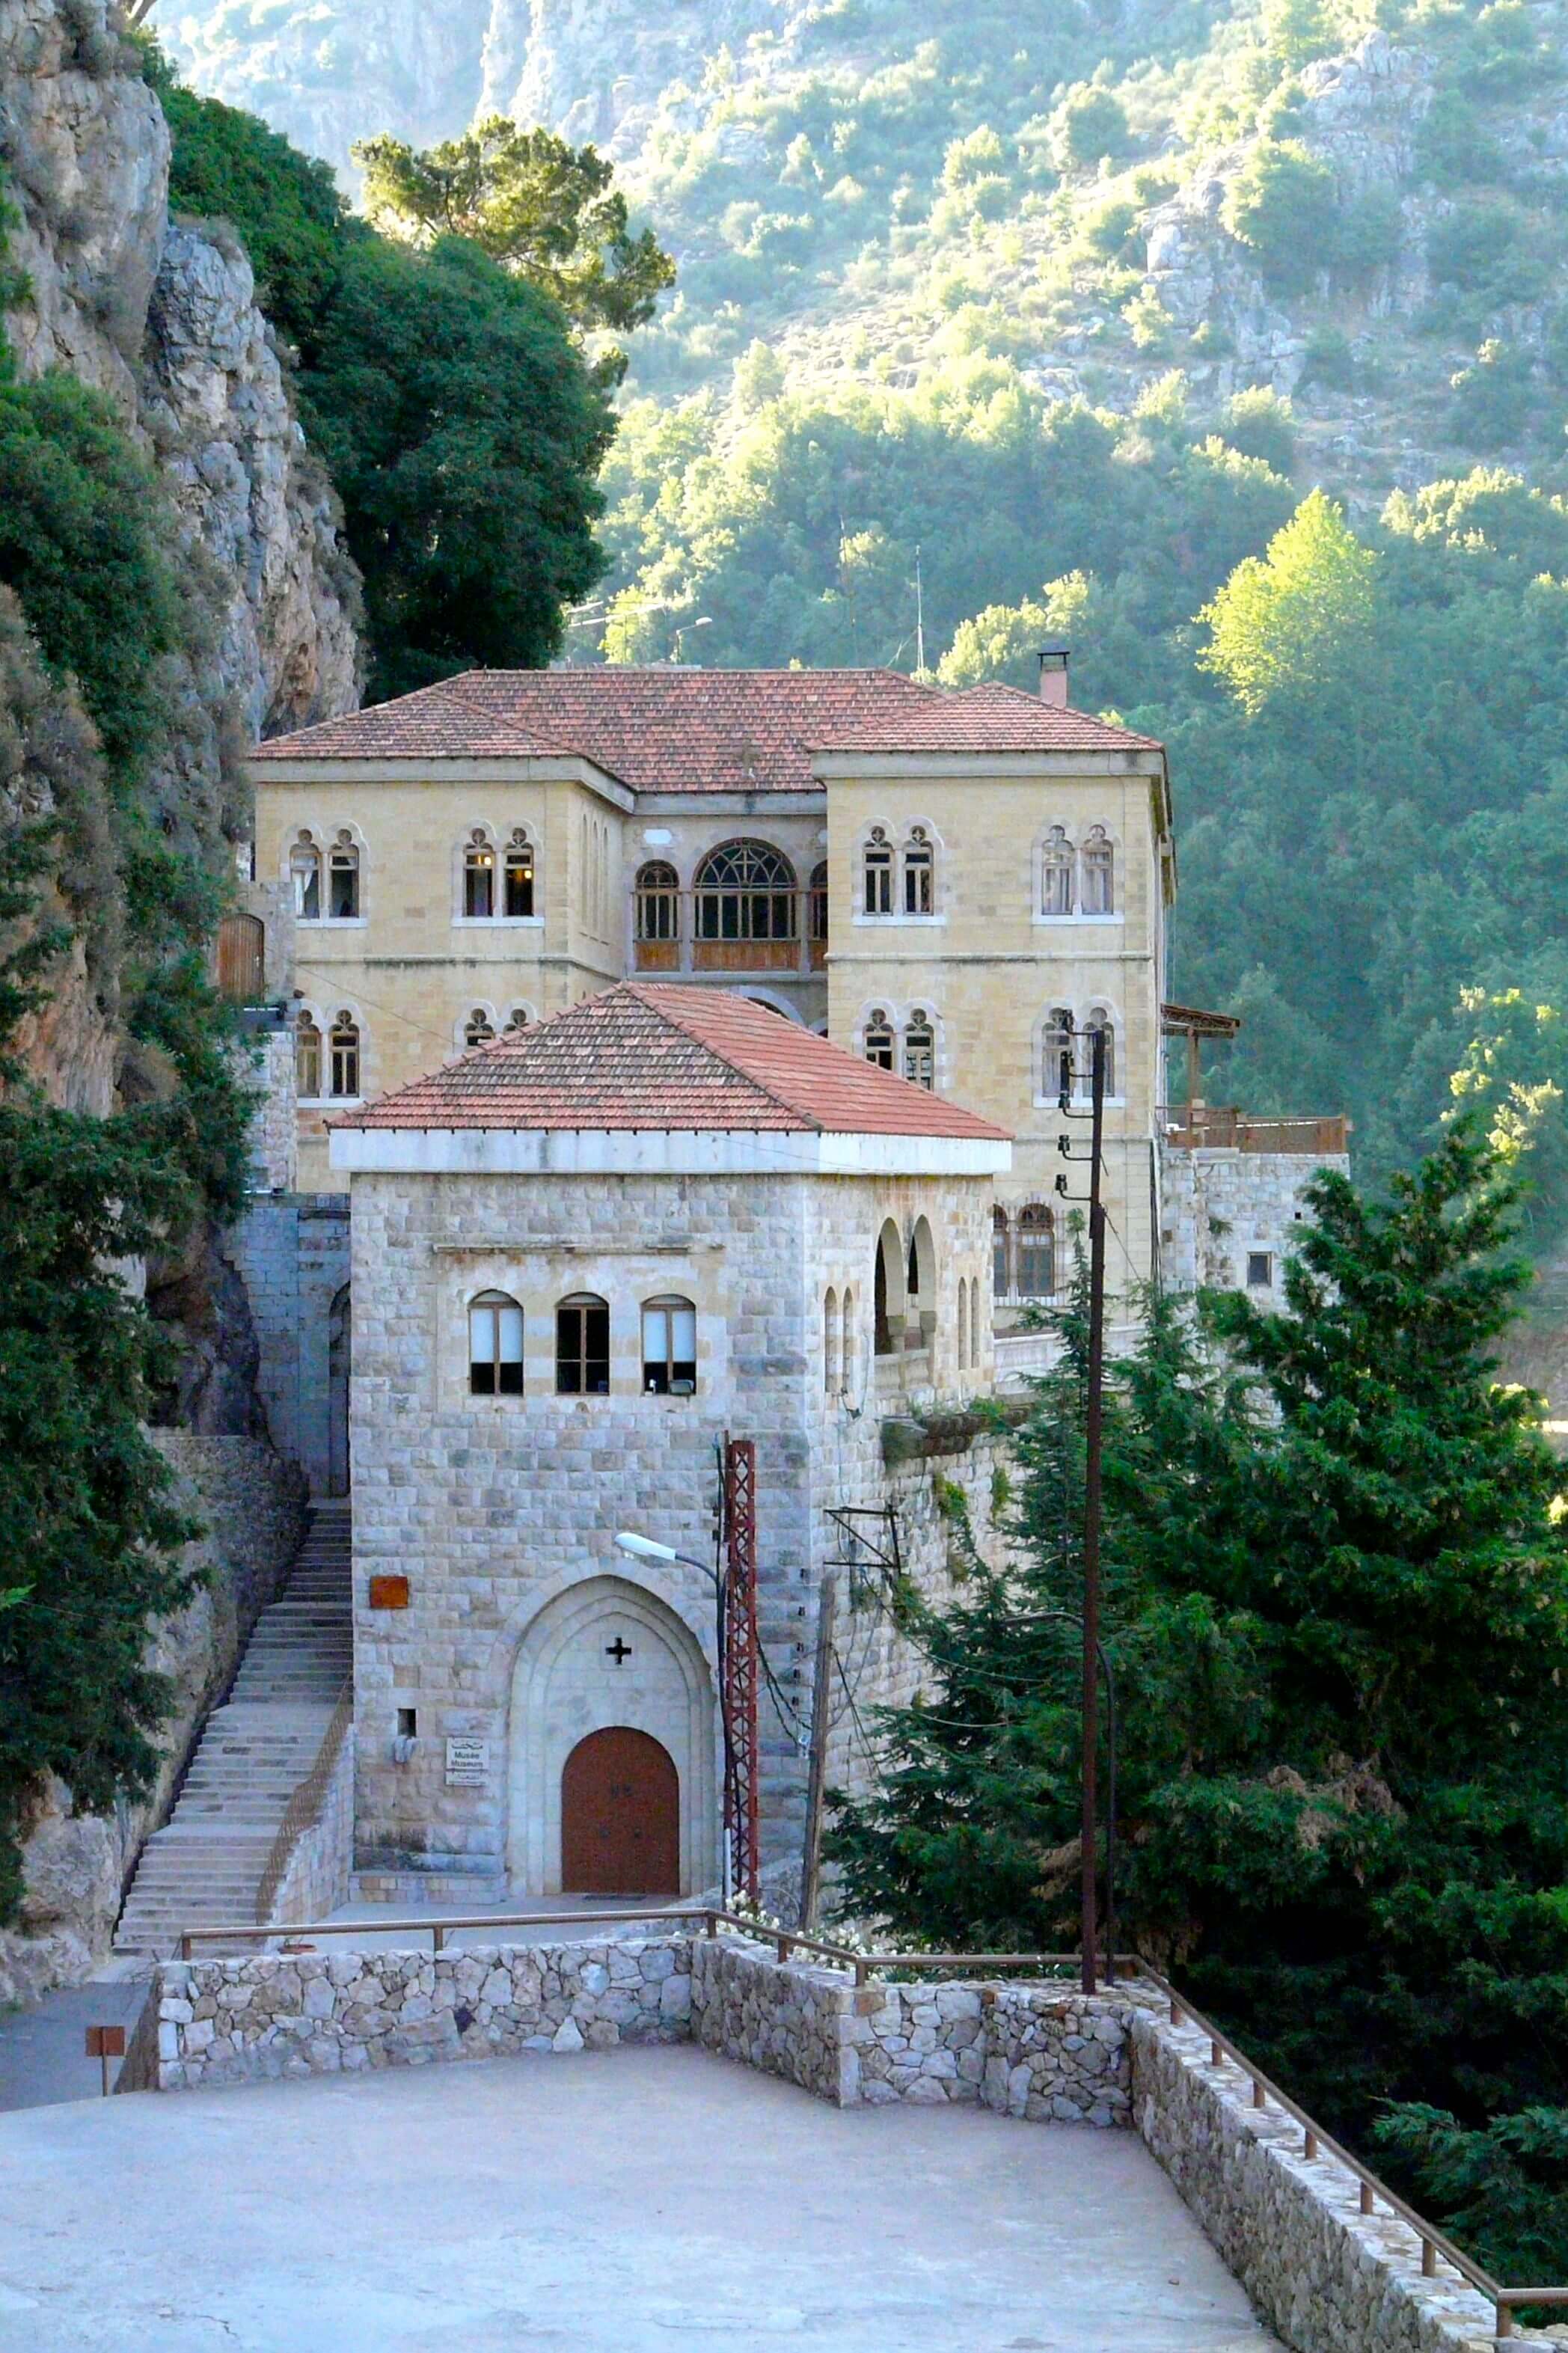 libanon, qadishavallei, qozhaya klooster guesthouse.jpg